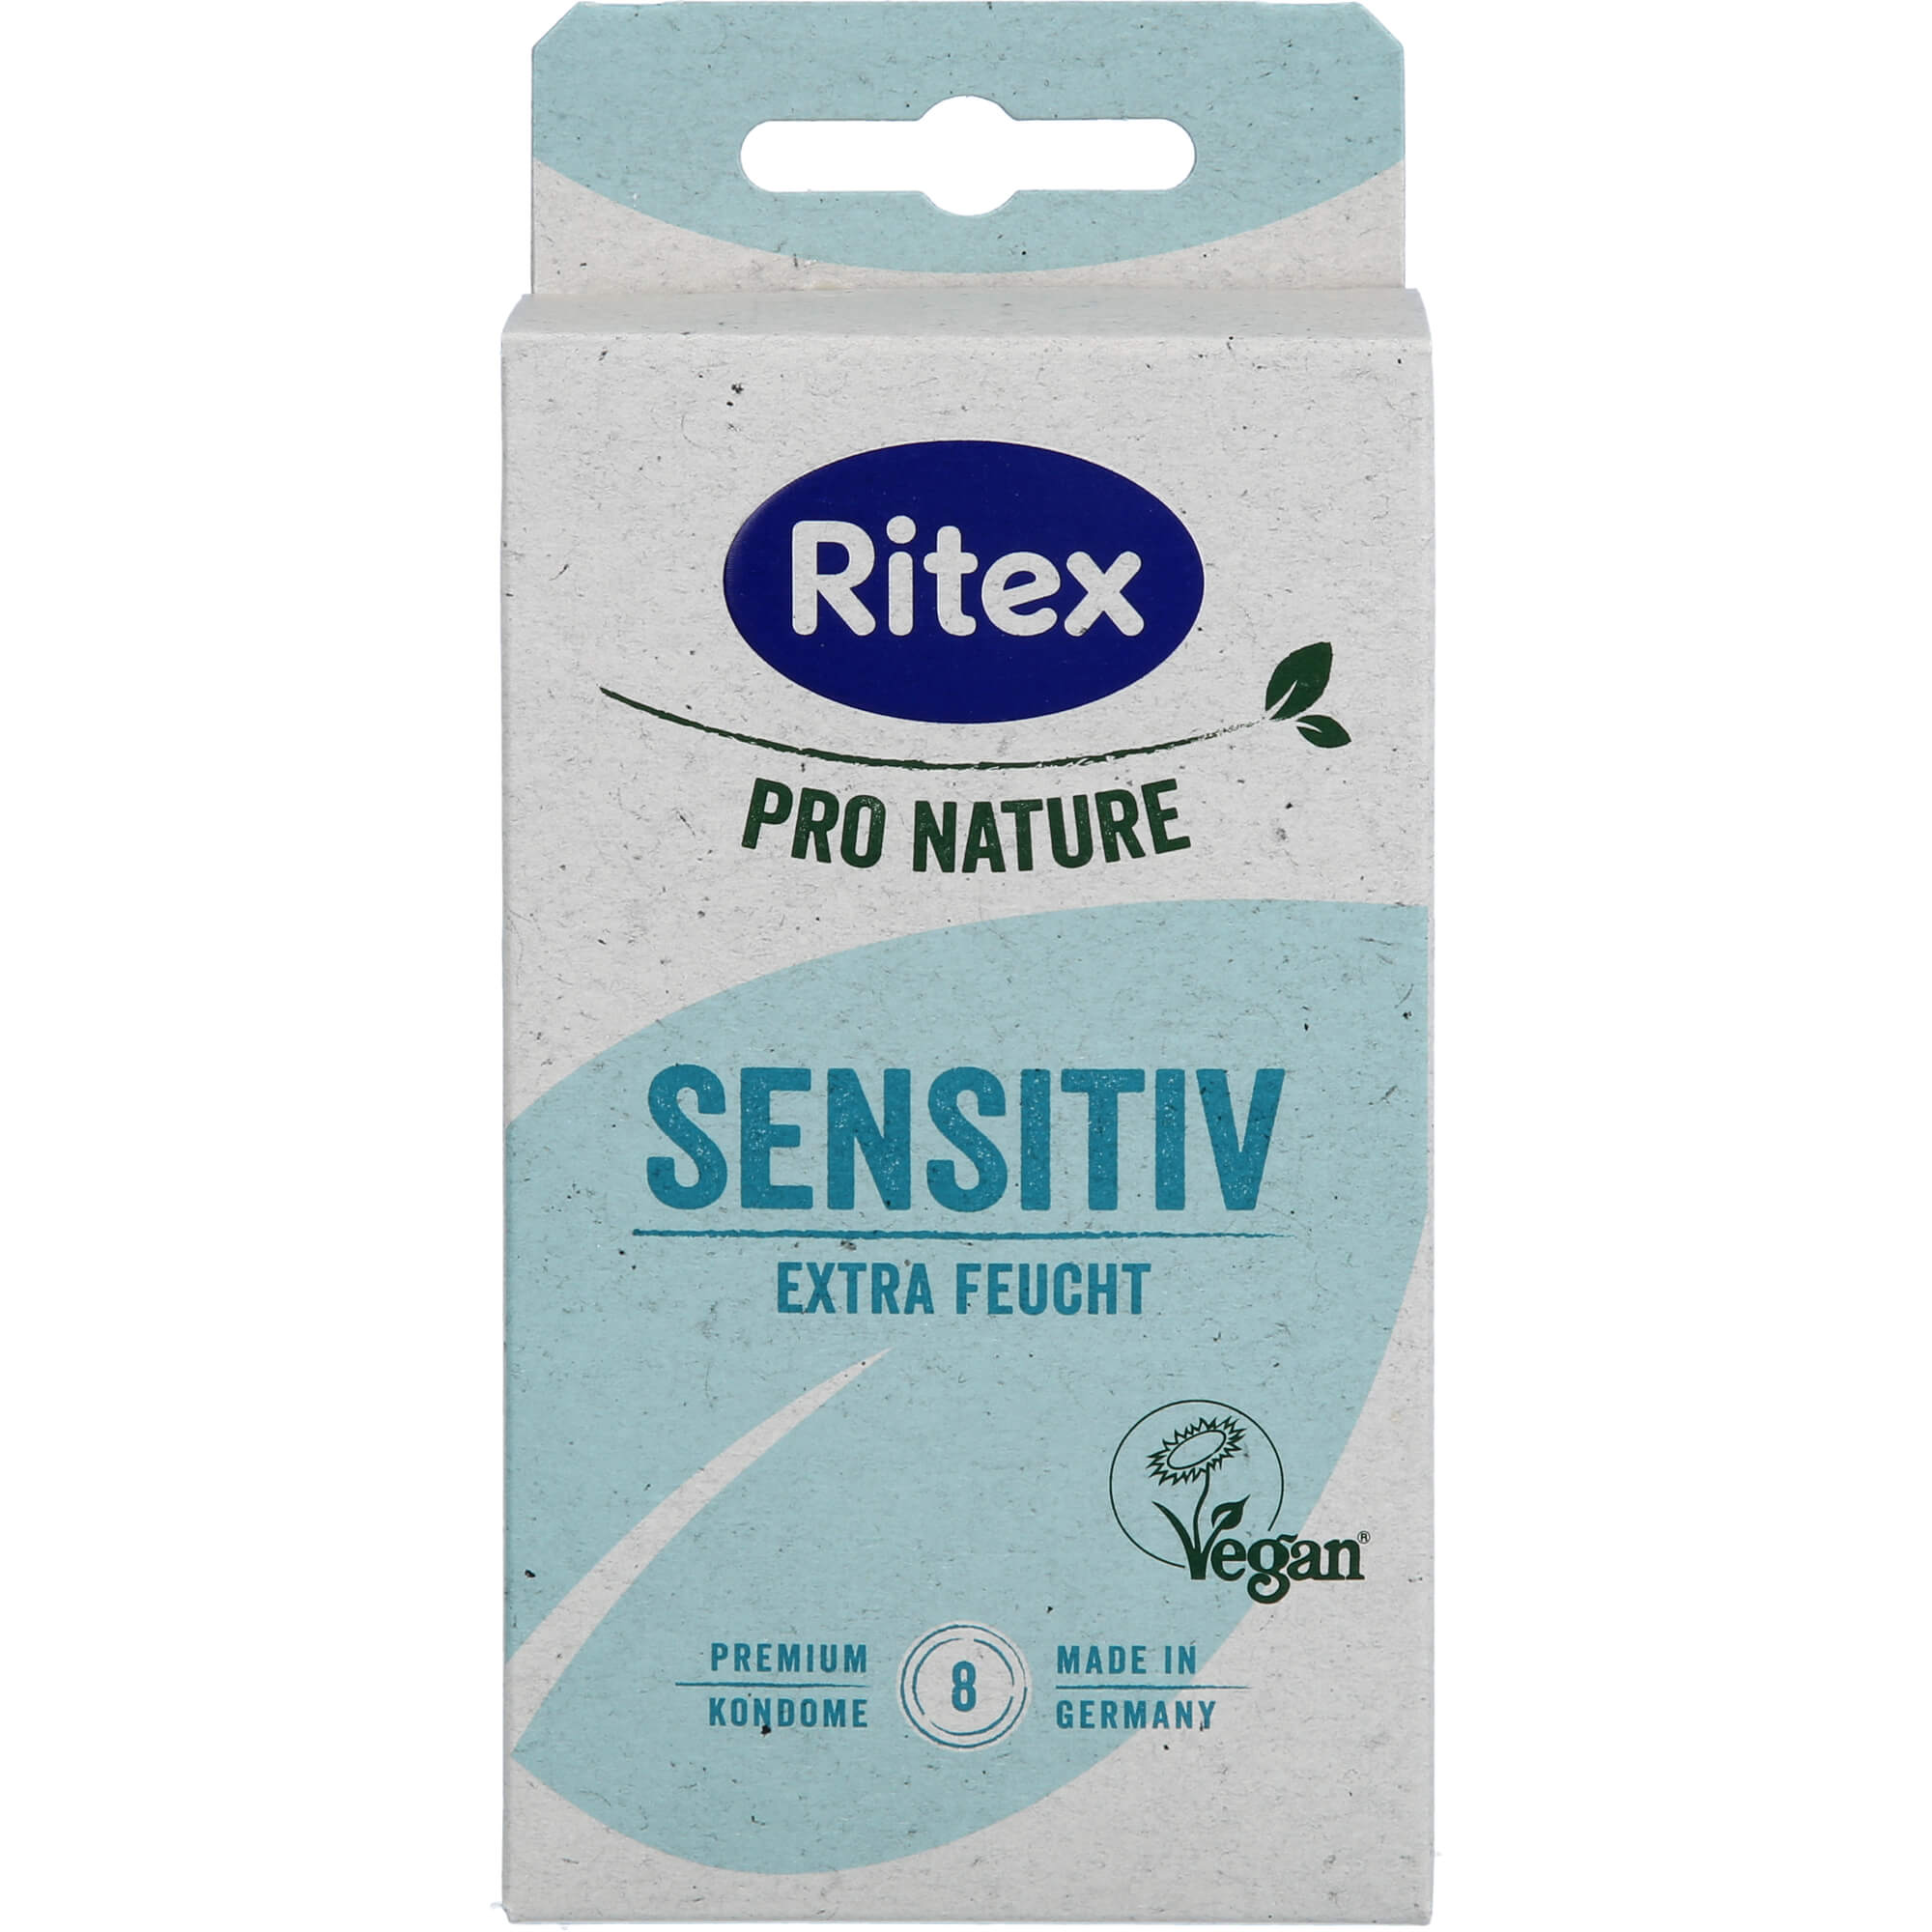 RITEX PRO NATURE SENSITIV vegan Kondome